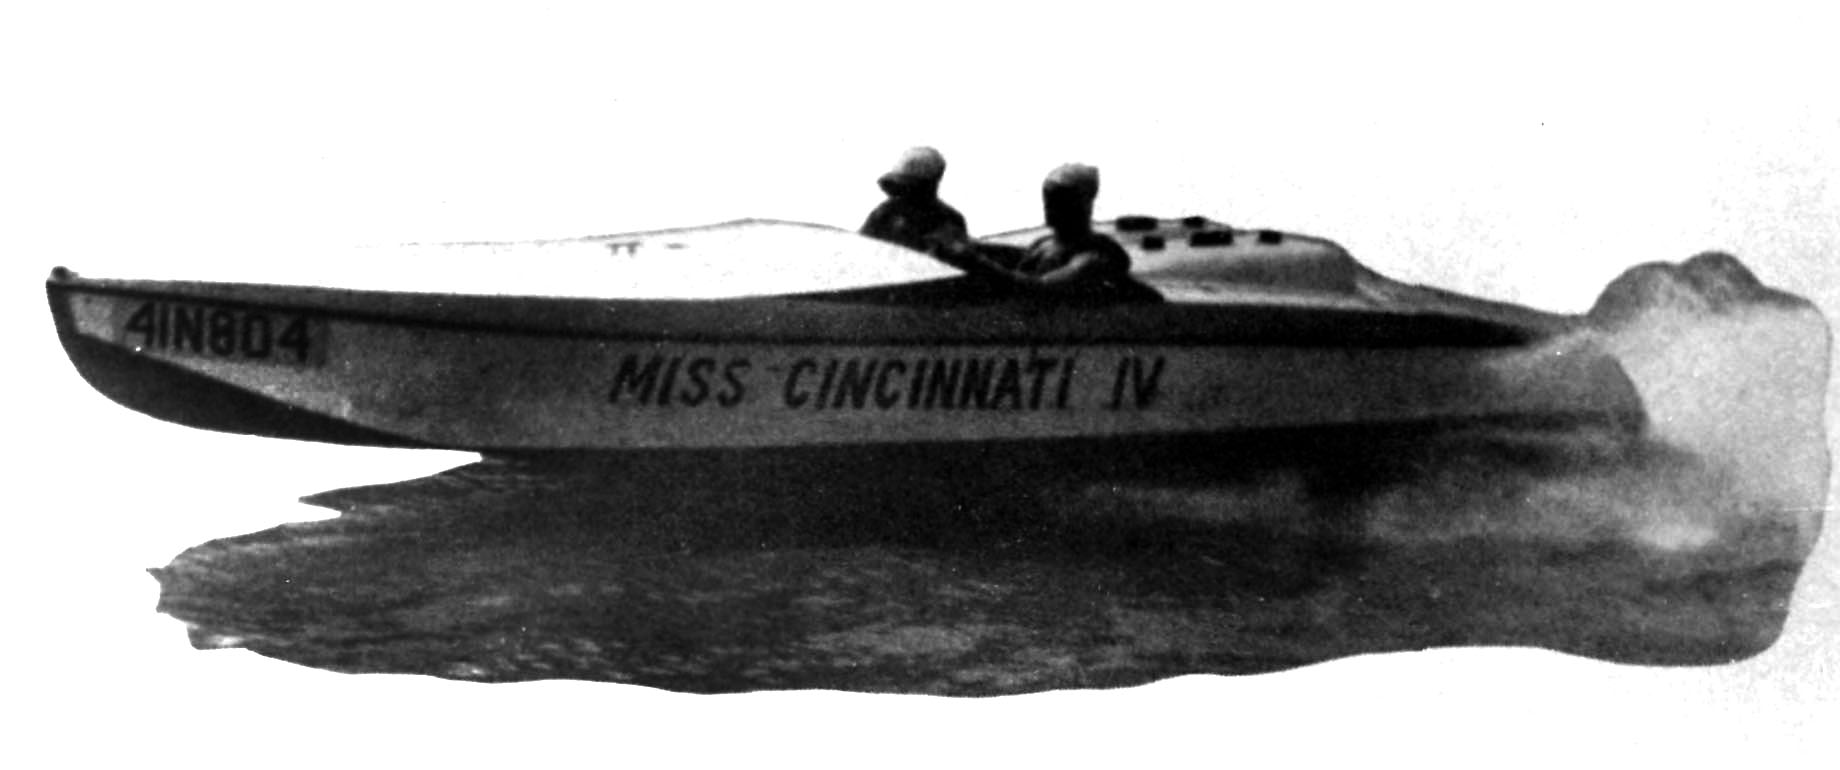 Miss Cincinnati IV